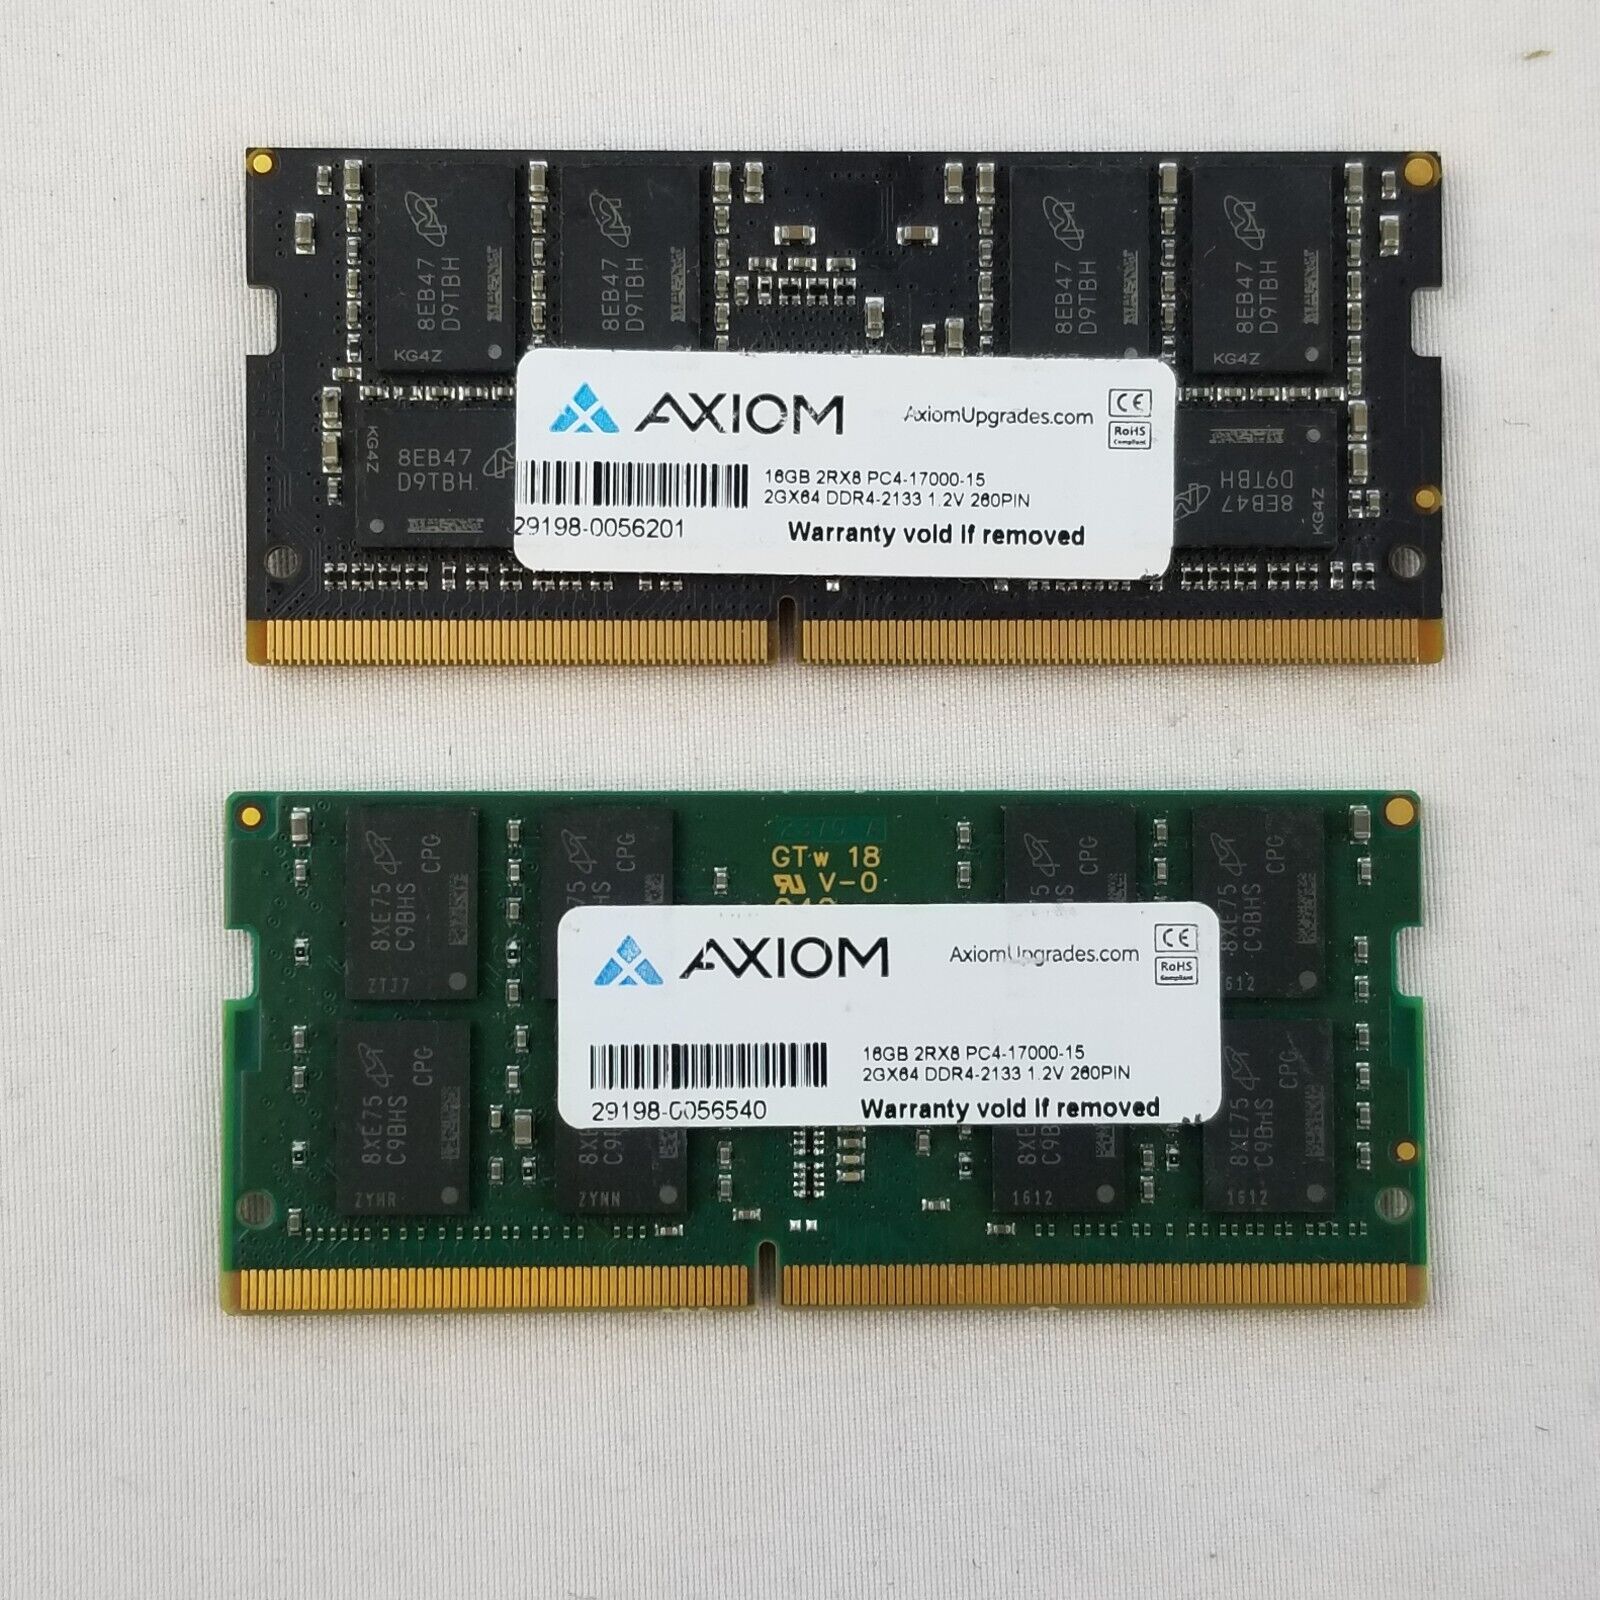 32GB AXIOM (16GB x2) RAM 2Rx8 PC4-17000S 2Gx64 DDR4-2133 1.2V SODIMM Memory